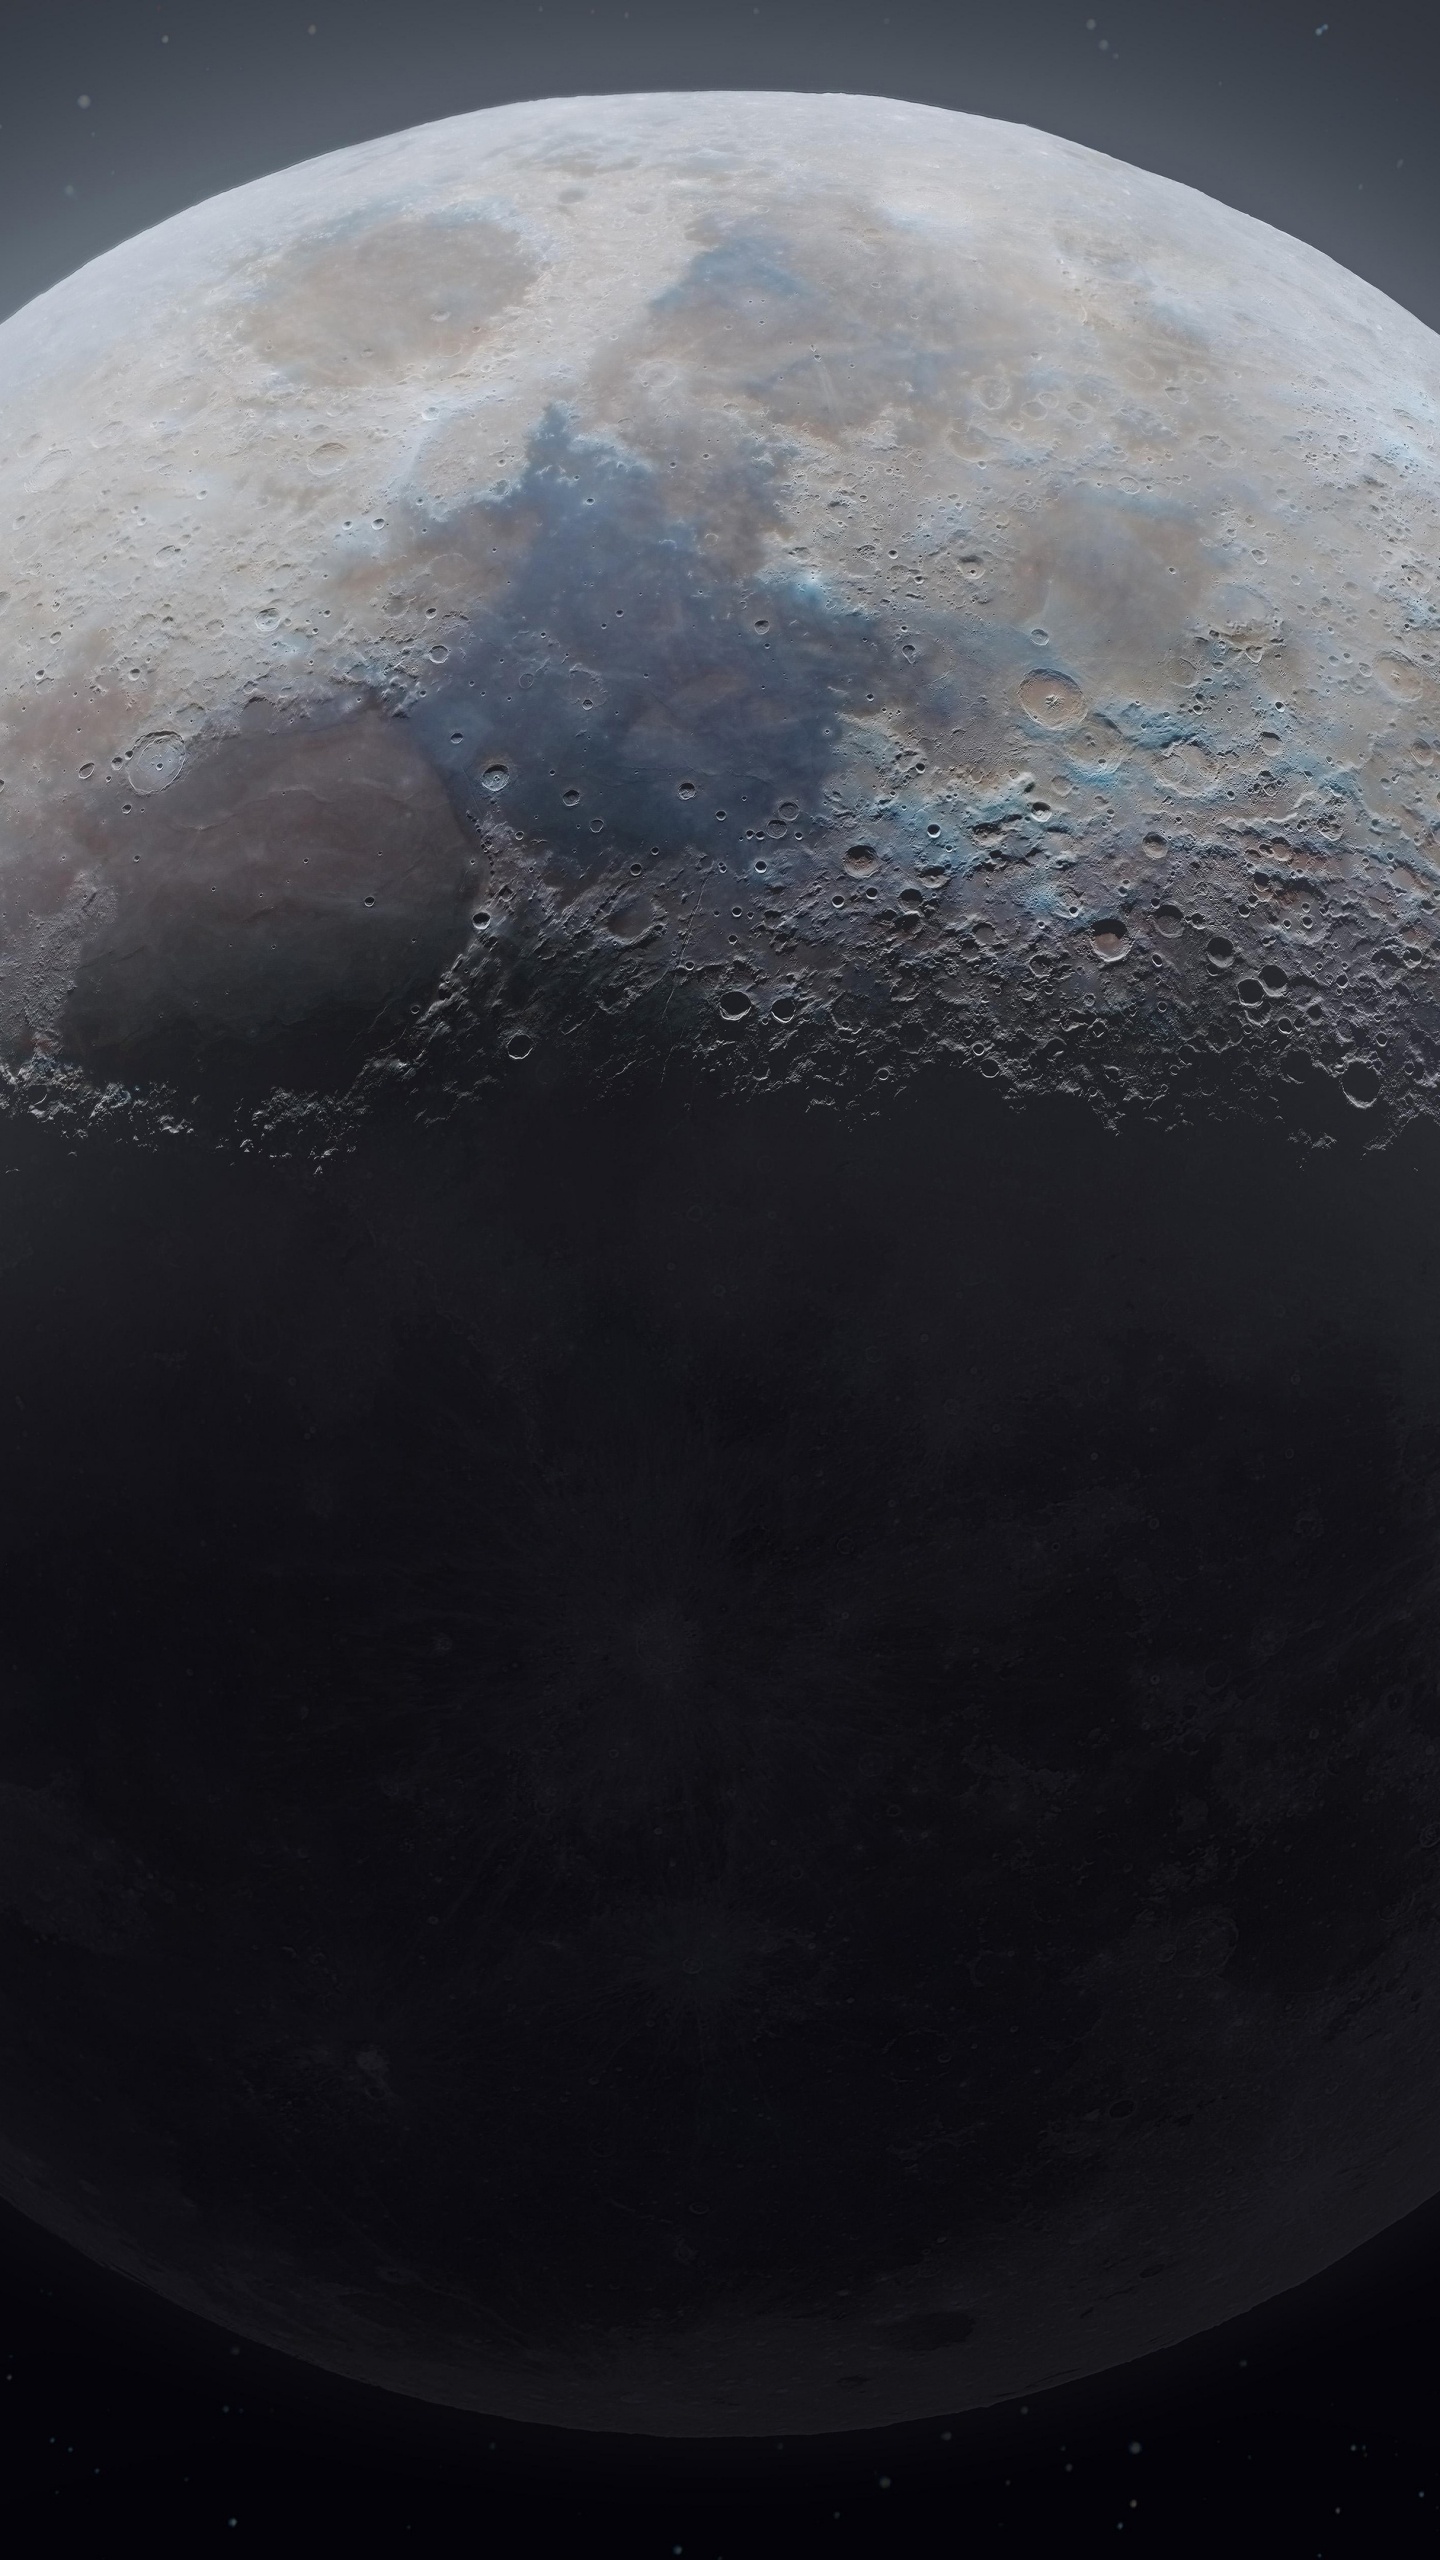 Mond-Astrofotografie, Astrofotografie, Mondkalender, Mond Aus Dem Weltraum, Atmosphäre. Wallpaper in 1440x2560 Resolution